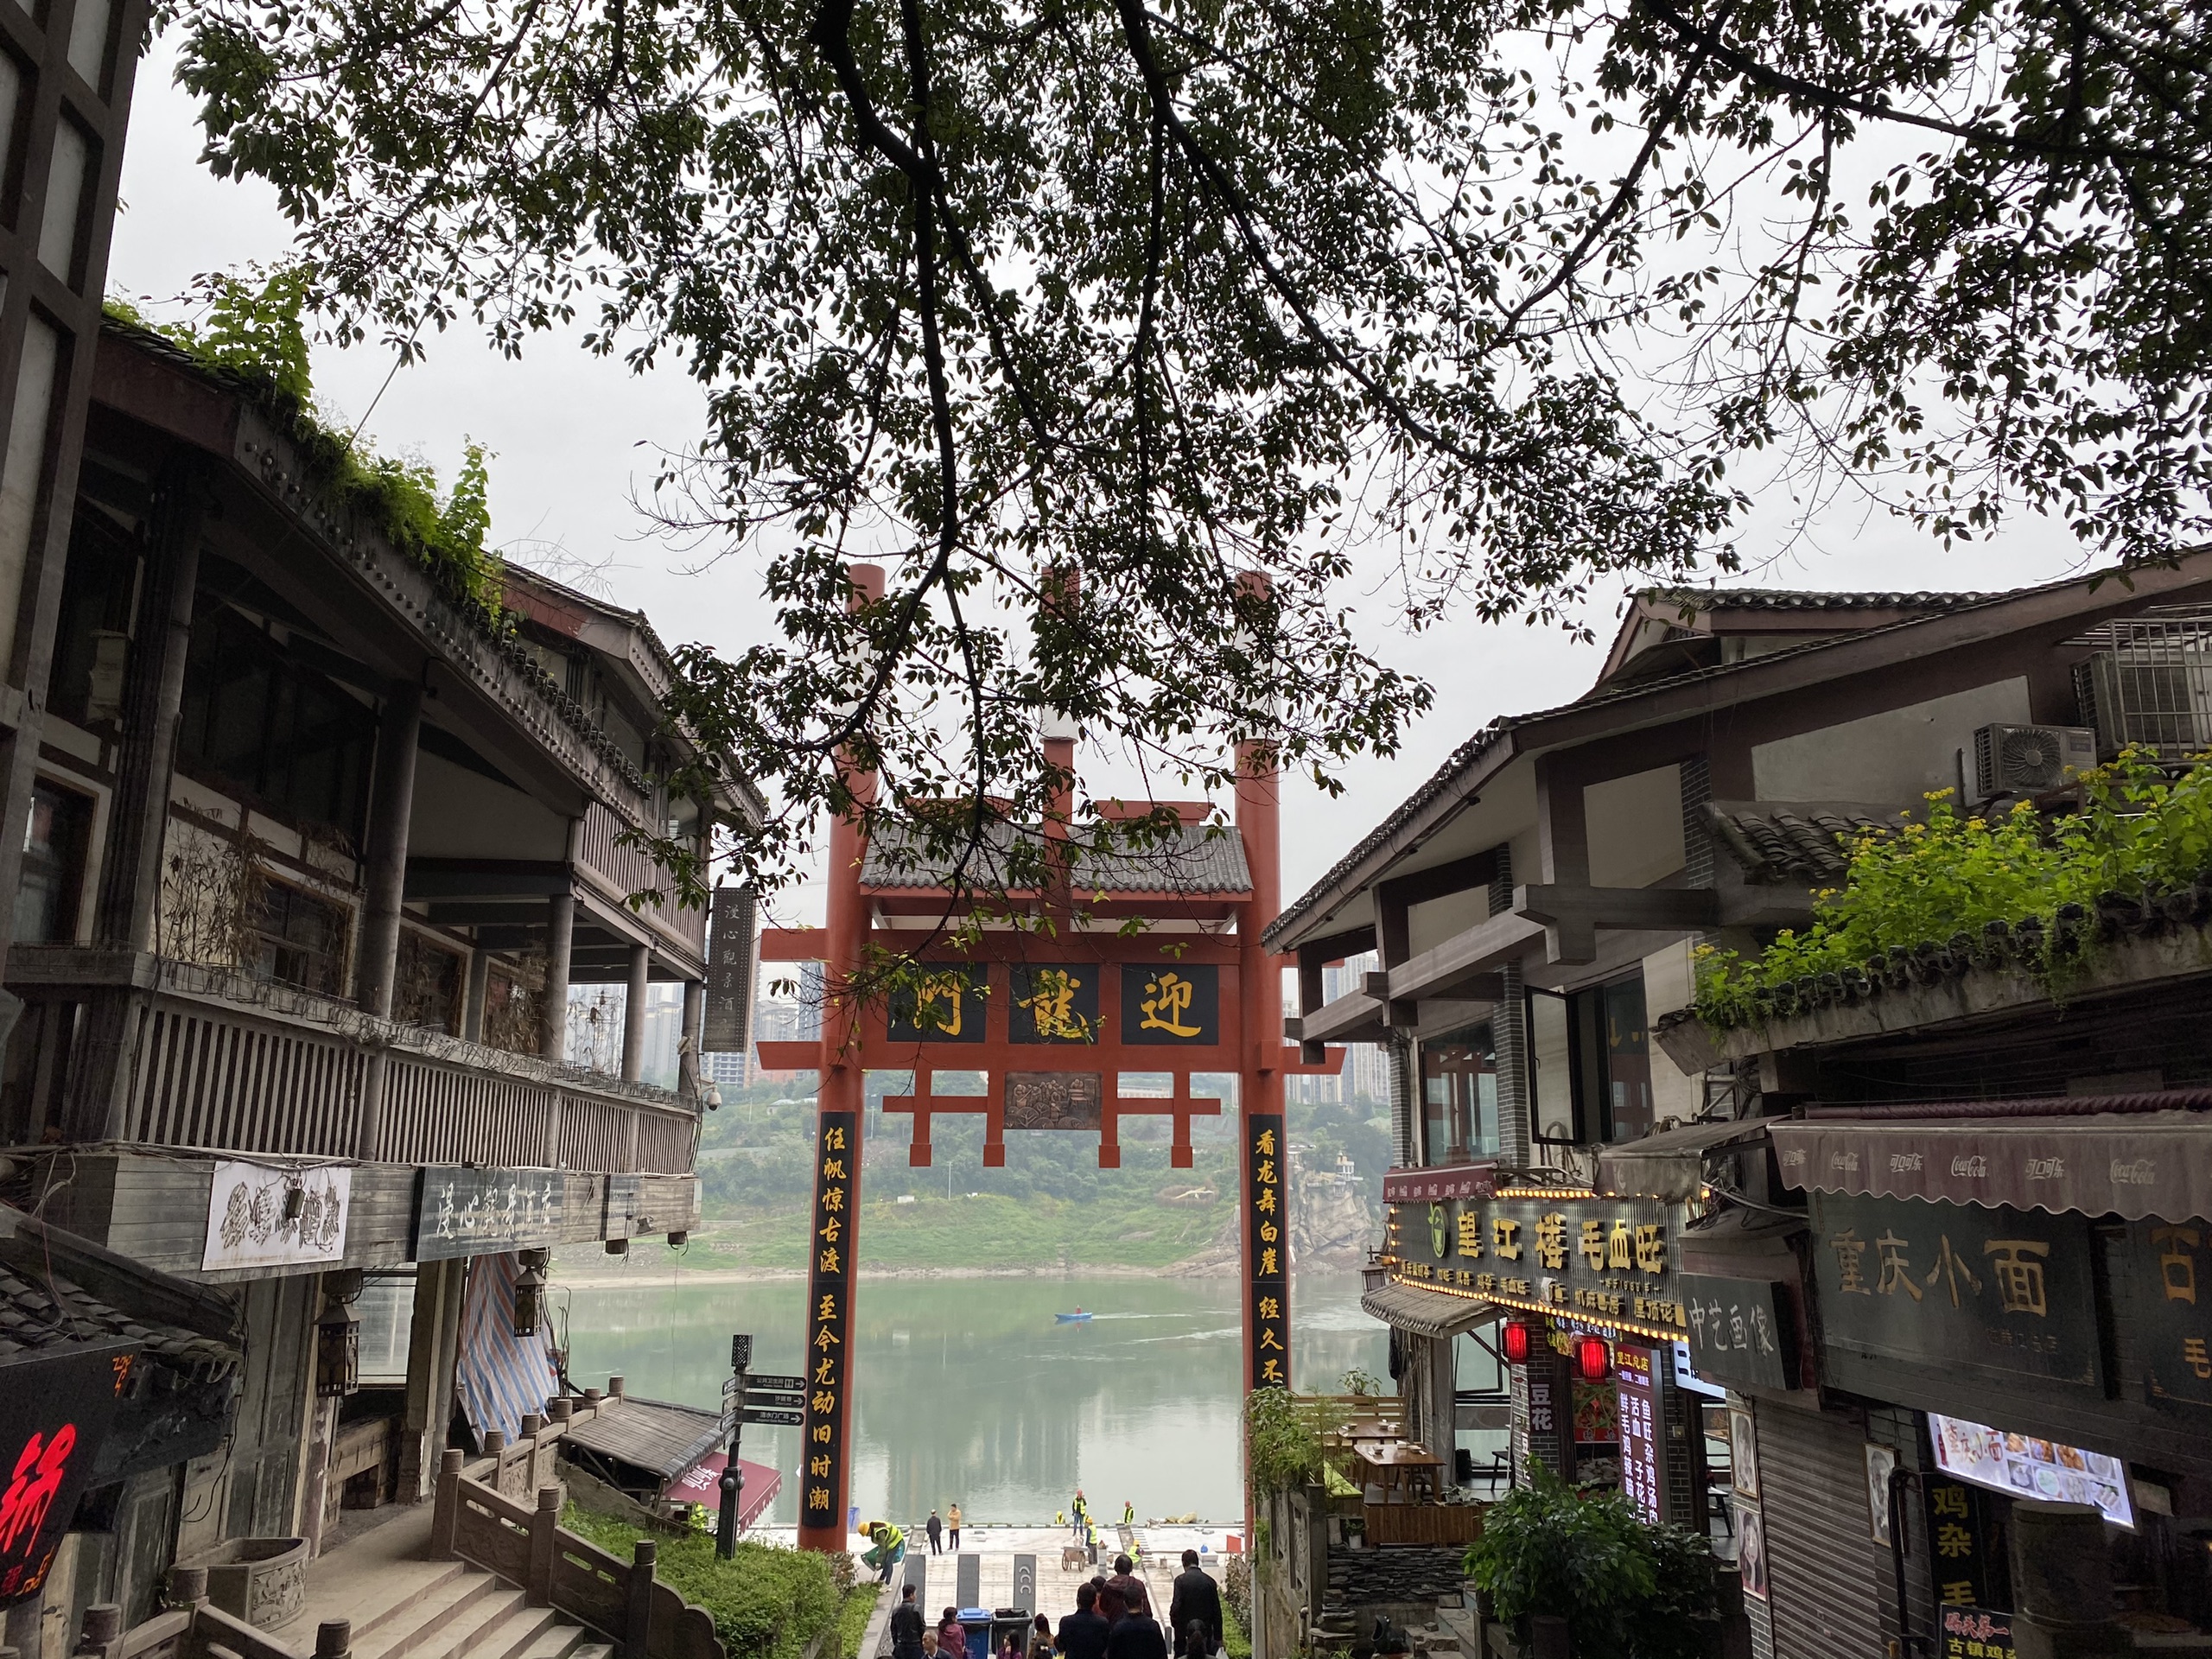 一条石板路，千年磁器口，是重庆古城的缩影和象征，被赞誉为“小重庆”，除了人多没毛病